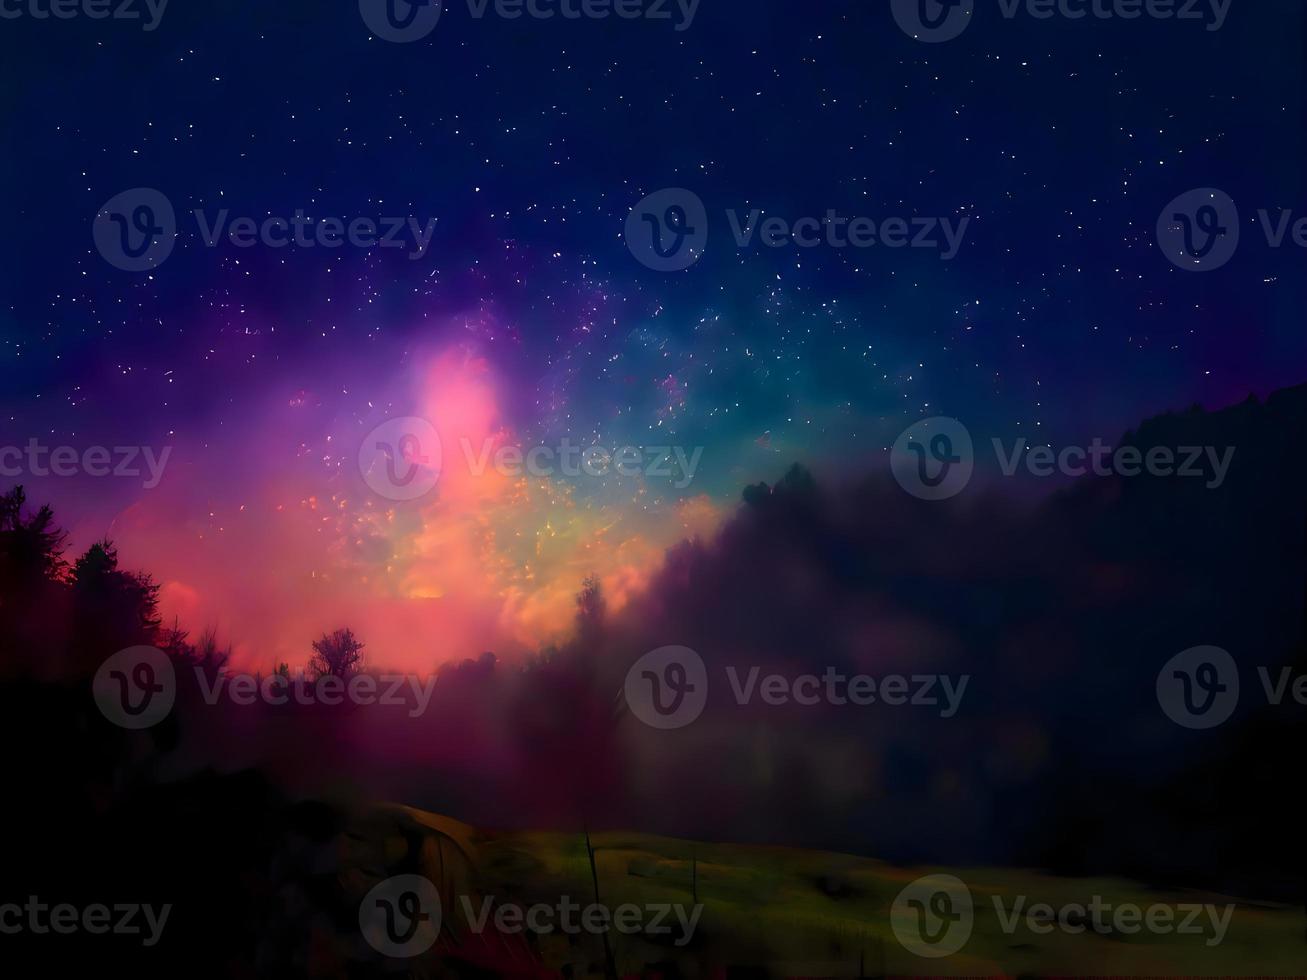 voie lactée et lumière rose dans les montagnes. paysage coloré de nuit. ciel étoilé avec des collines. bel univers. arrière-plan de l'espace avec galaxie. fond de voyage photo